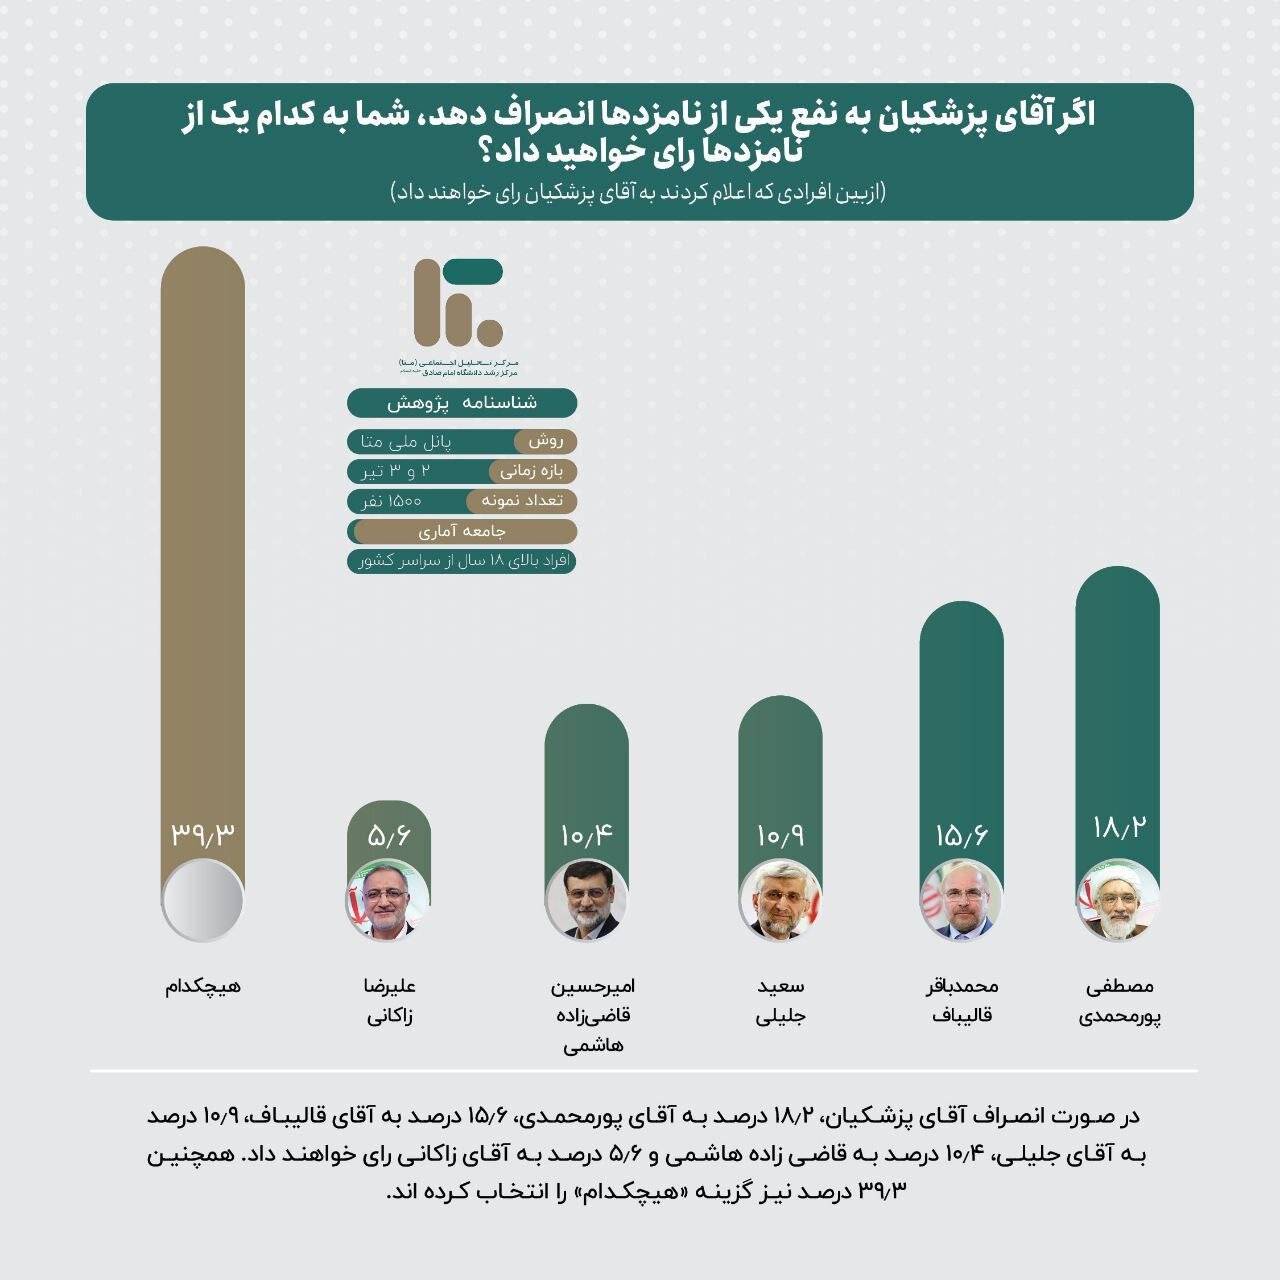 سهم نامزدهای انتخاباتی از سبد رأی یکدیگر چه میزان است؟ | تصاویر